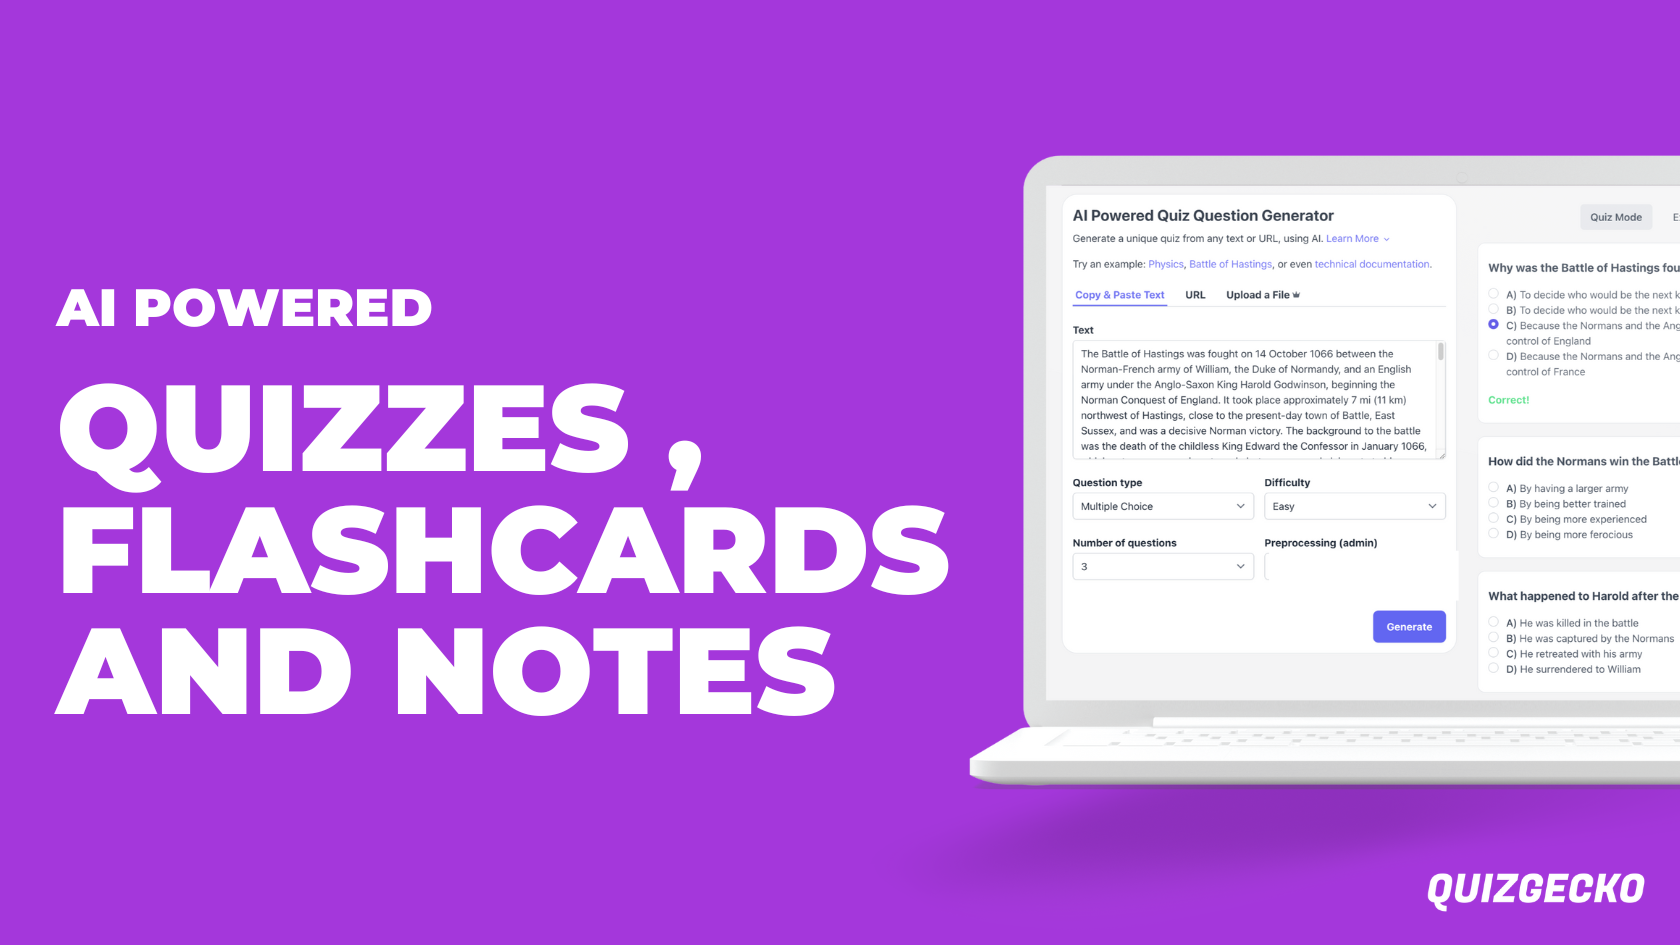 Quizgecko: una herramienta para cuestionarios, tarjetas flash y generación de notas